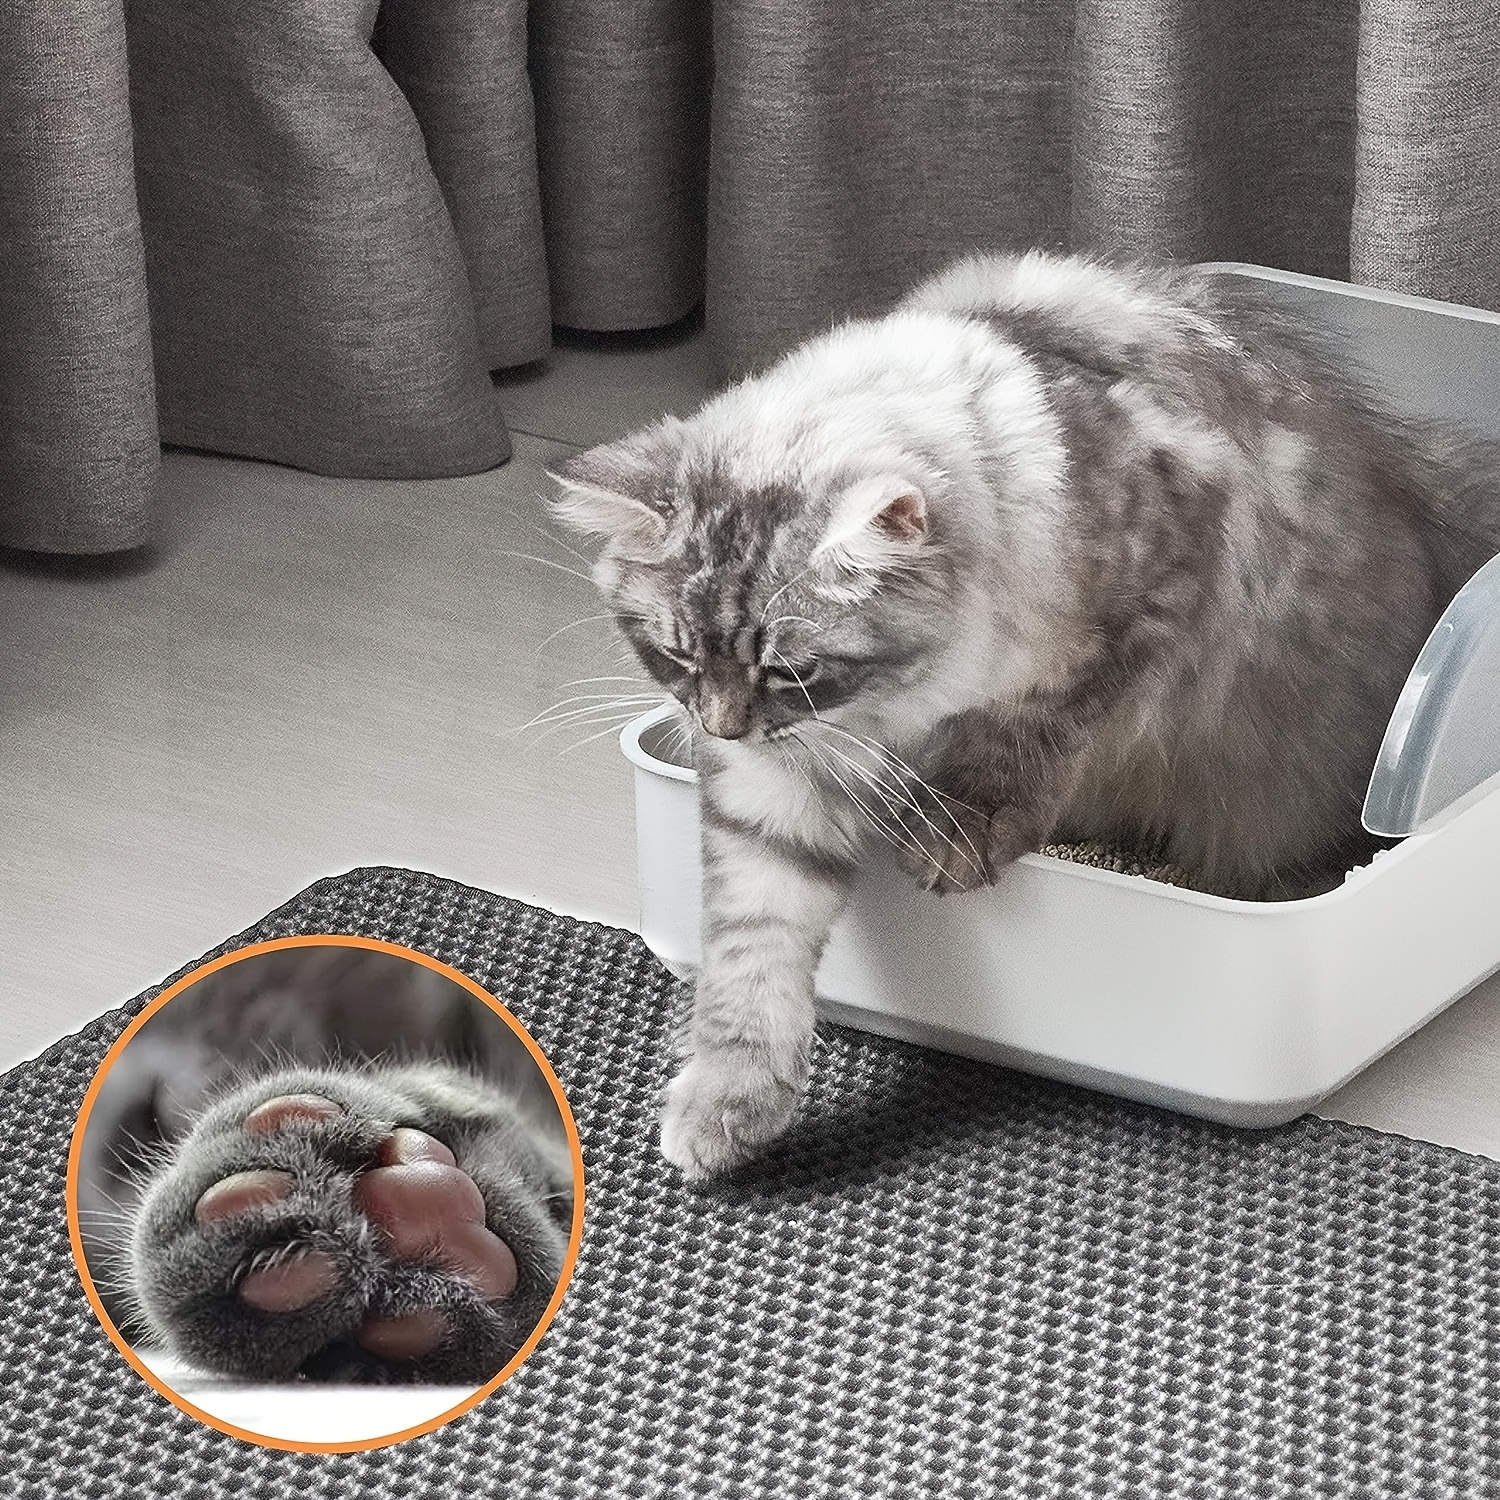 Waterproof Pet Cat Double Layer Litter Box Mat Cats Dogs Pad Washable Litter  Mat For Cats Dogs - Temu